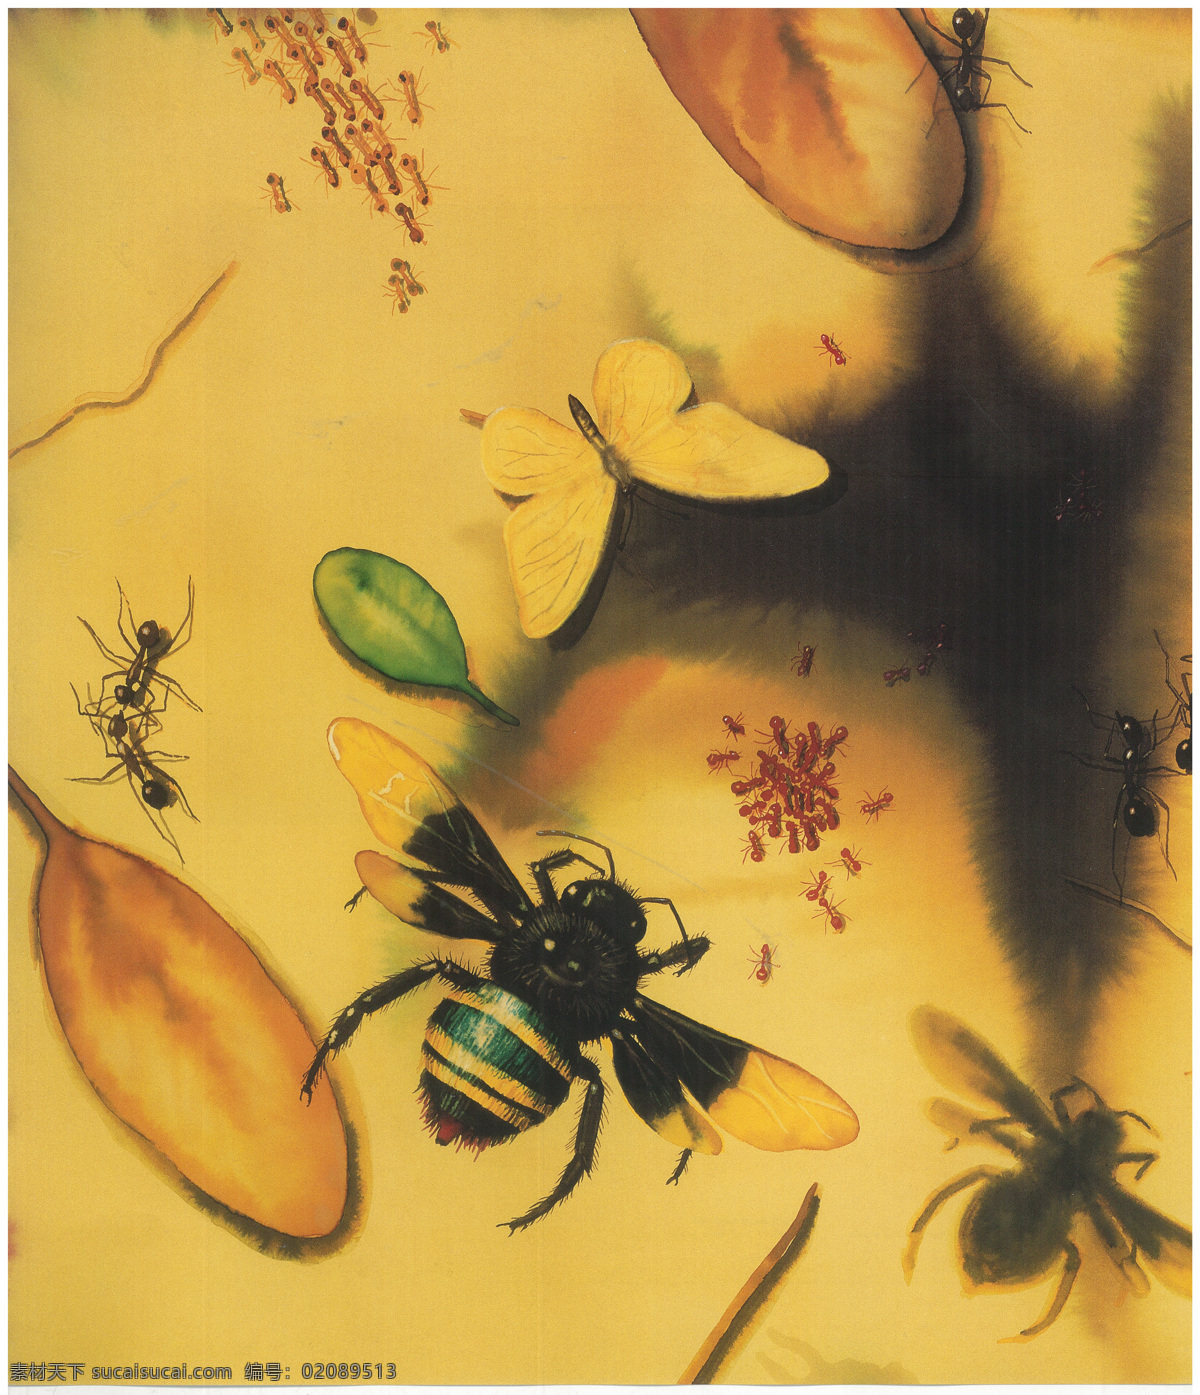 手绘蜜蜂蚂蚁 手绘 蜜蜂 蚂蚁 微观 昆虫 生物 蝴蝶 生物世界 黄色